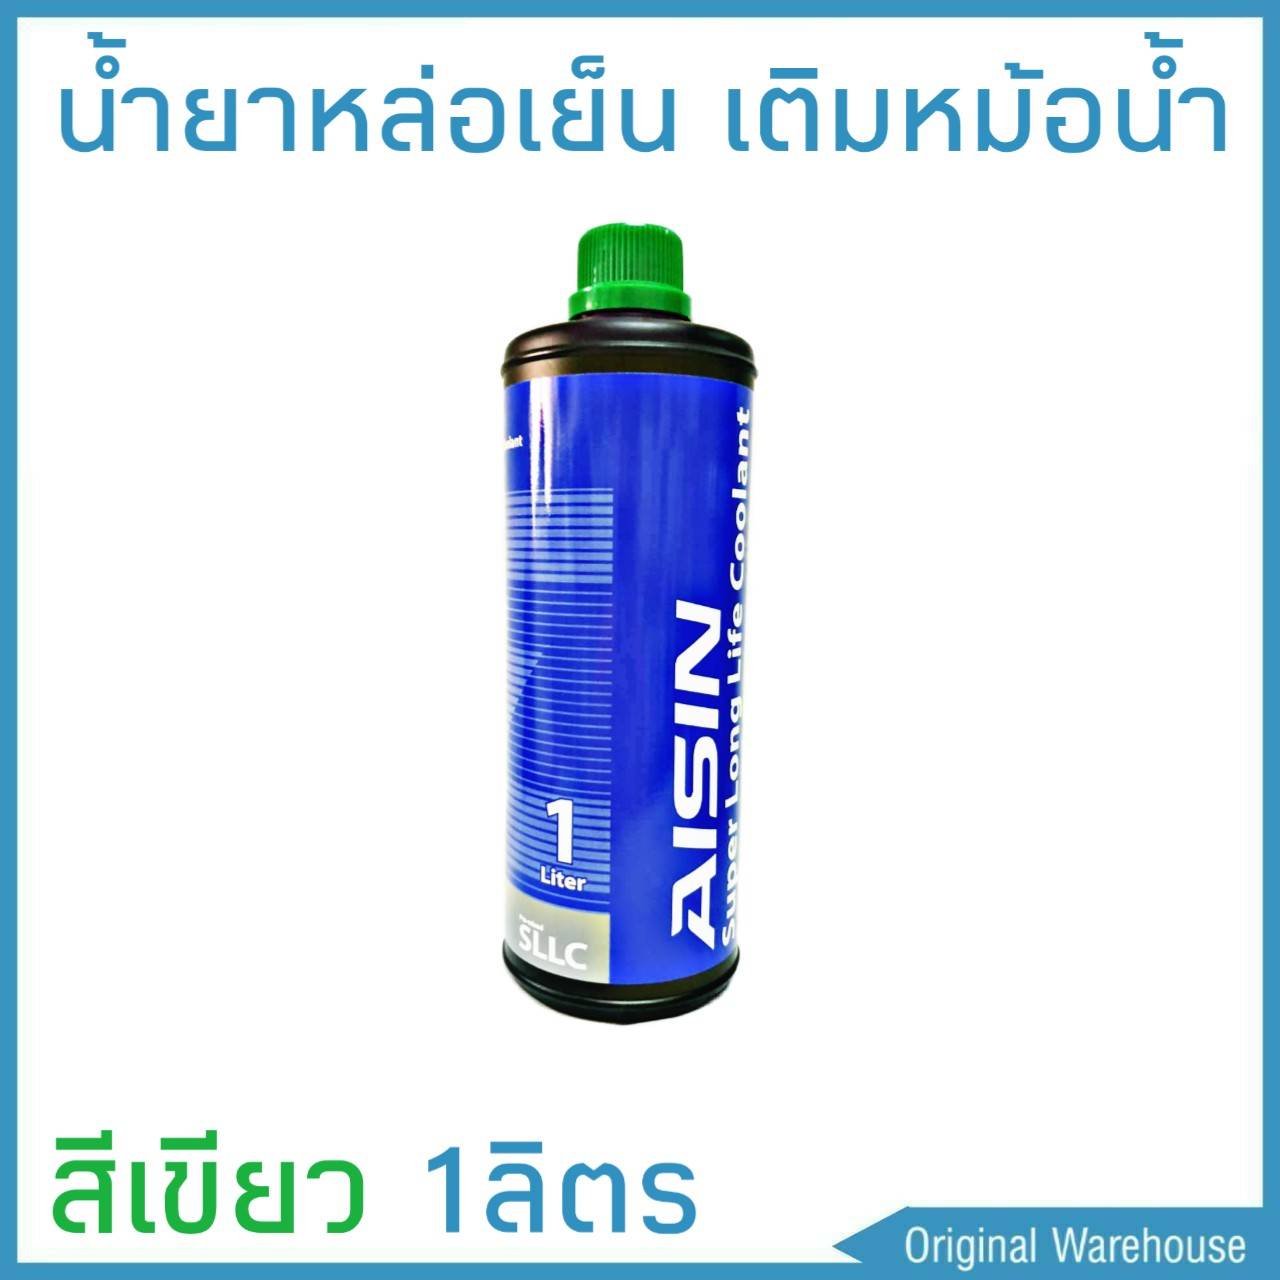 น้ำยาหม้อน้ำ AISIN COOLANT สีเขียว 1ลิตร น้ำยาหล่อเย็นหม้อน้ำ ไอซิน